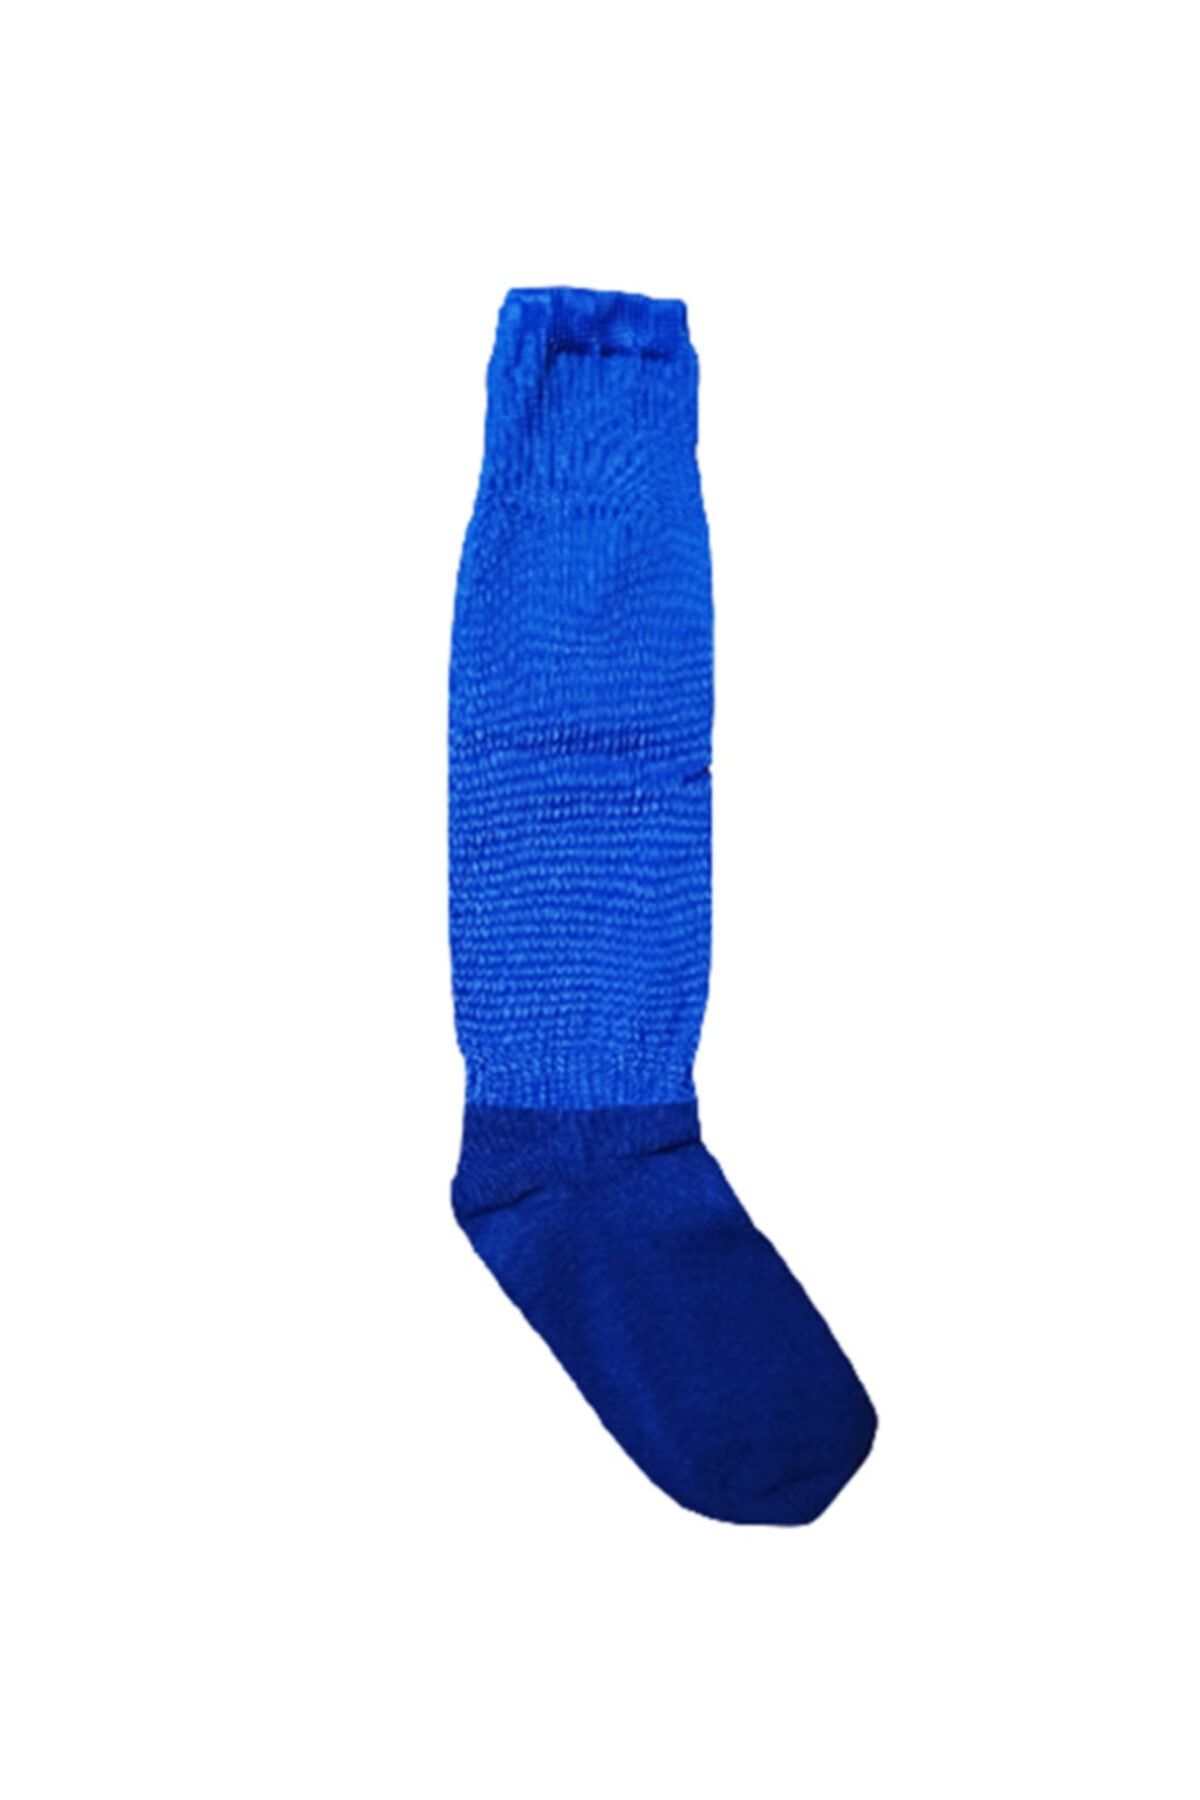 K18 Garson Boy Çocuk Futbol Tozluğu Çorap Saks Mavi (36-39)